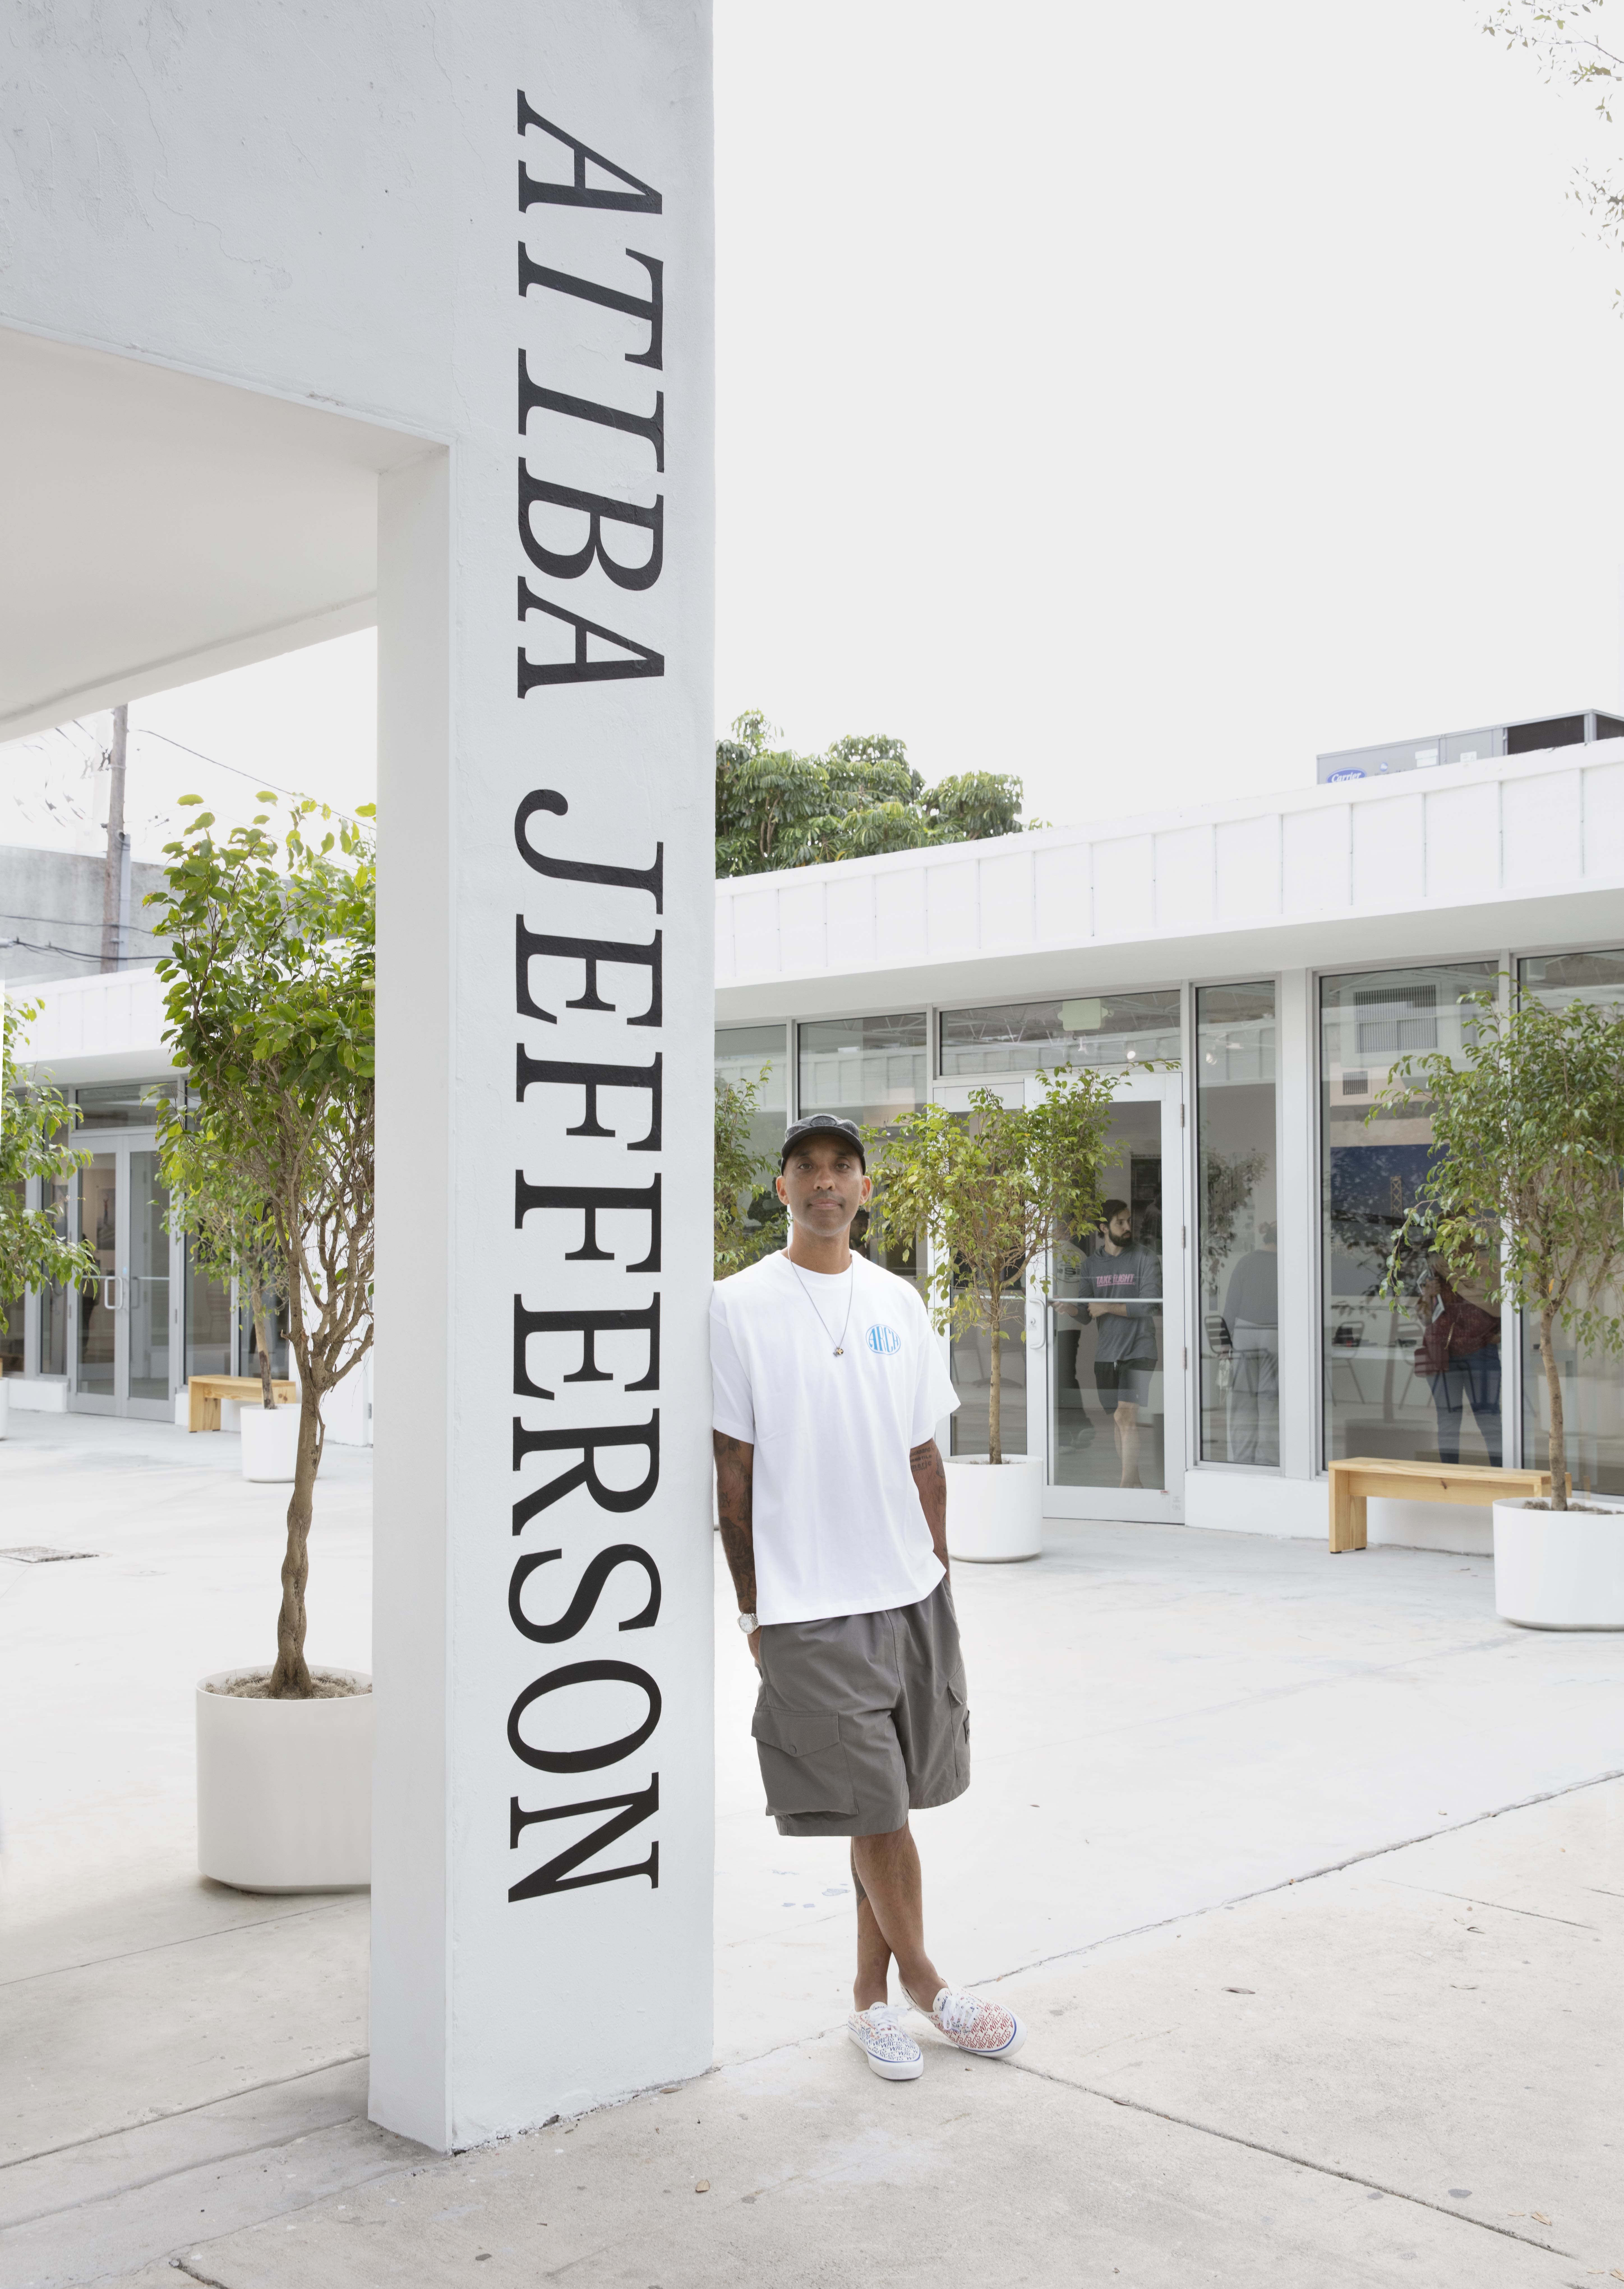 Artist Atiba Jefferson’s at Miami Art Basel celebrating their show